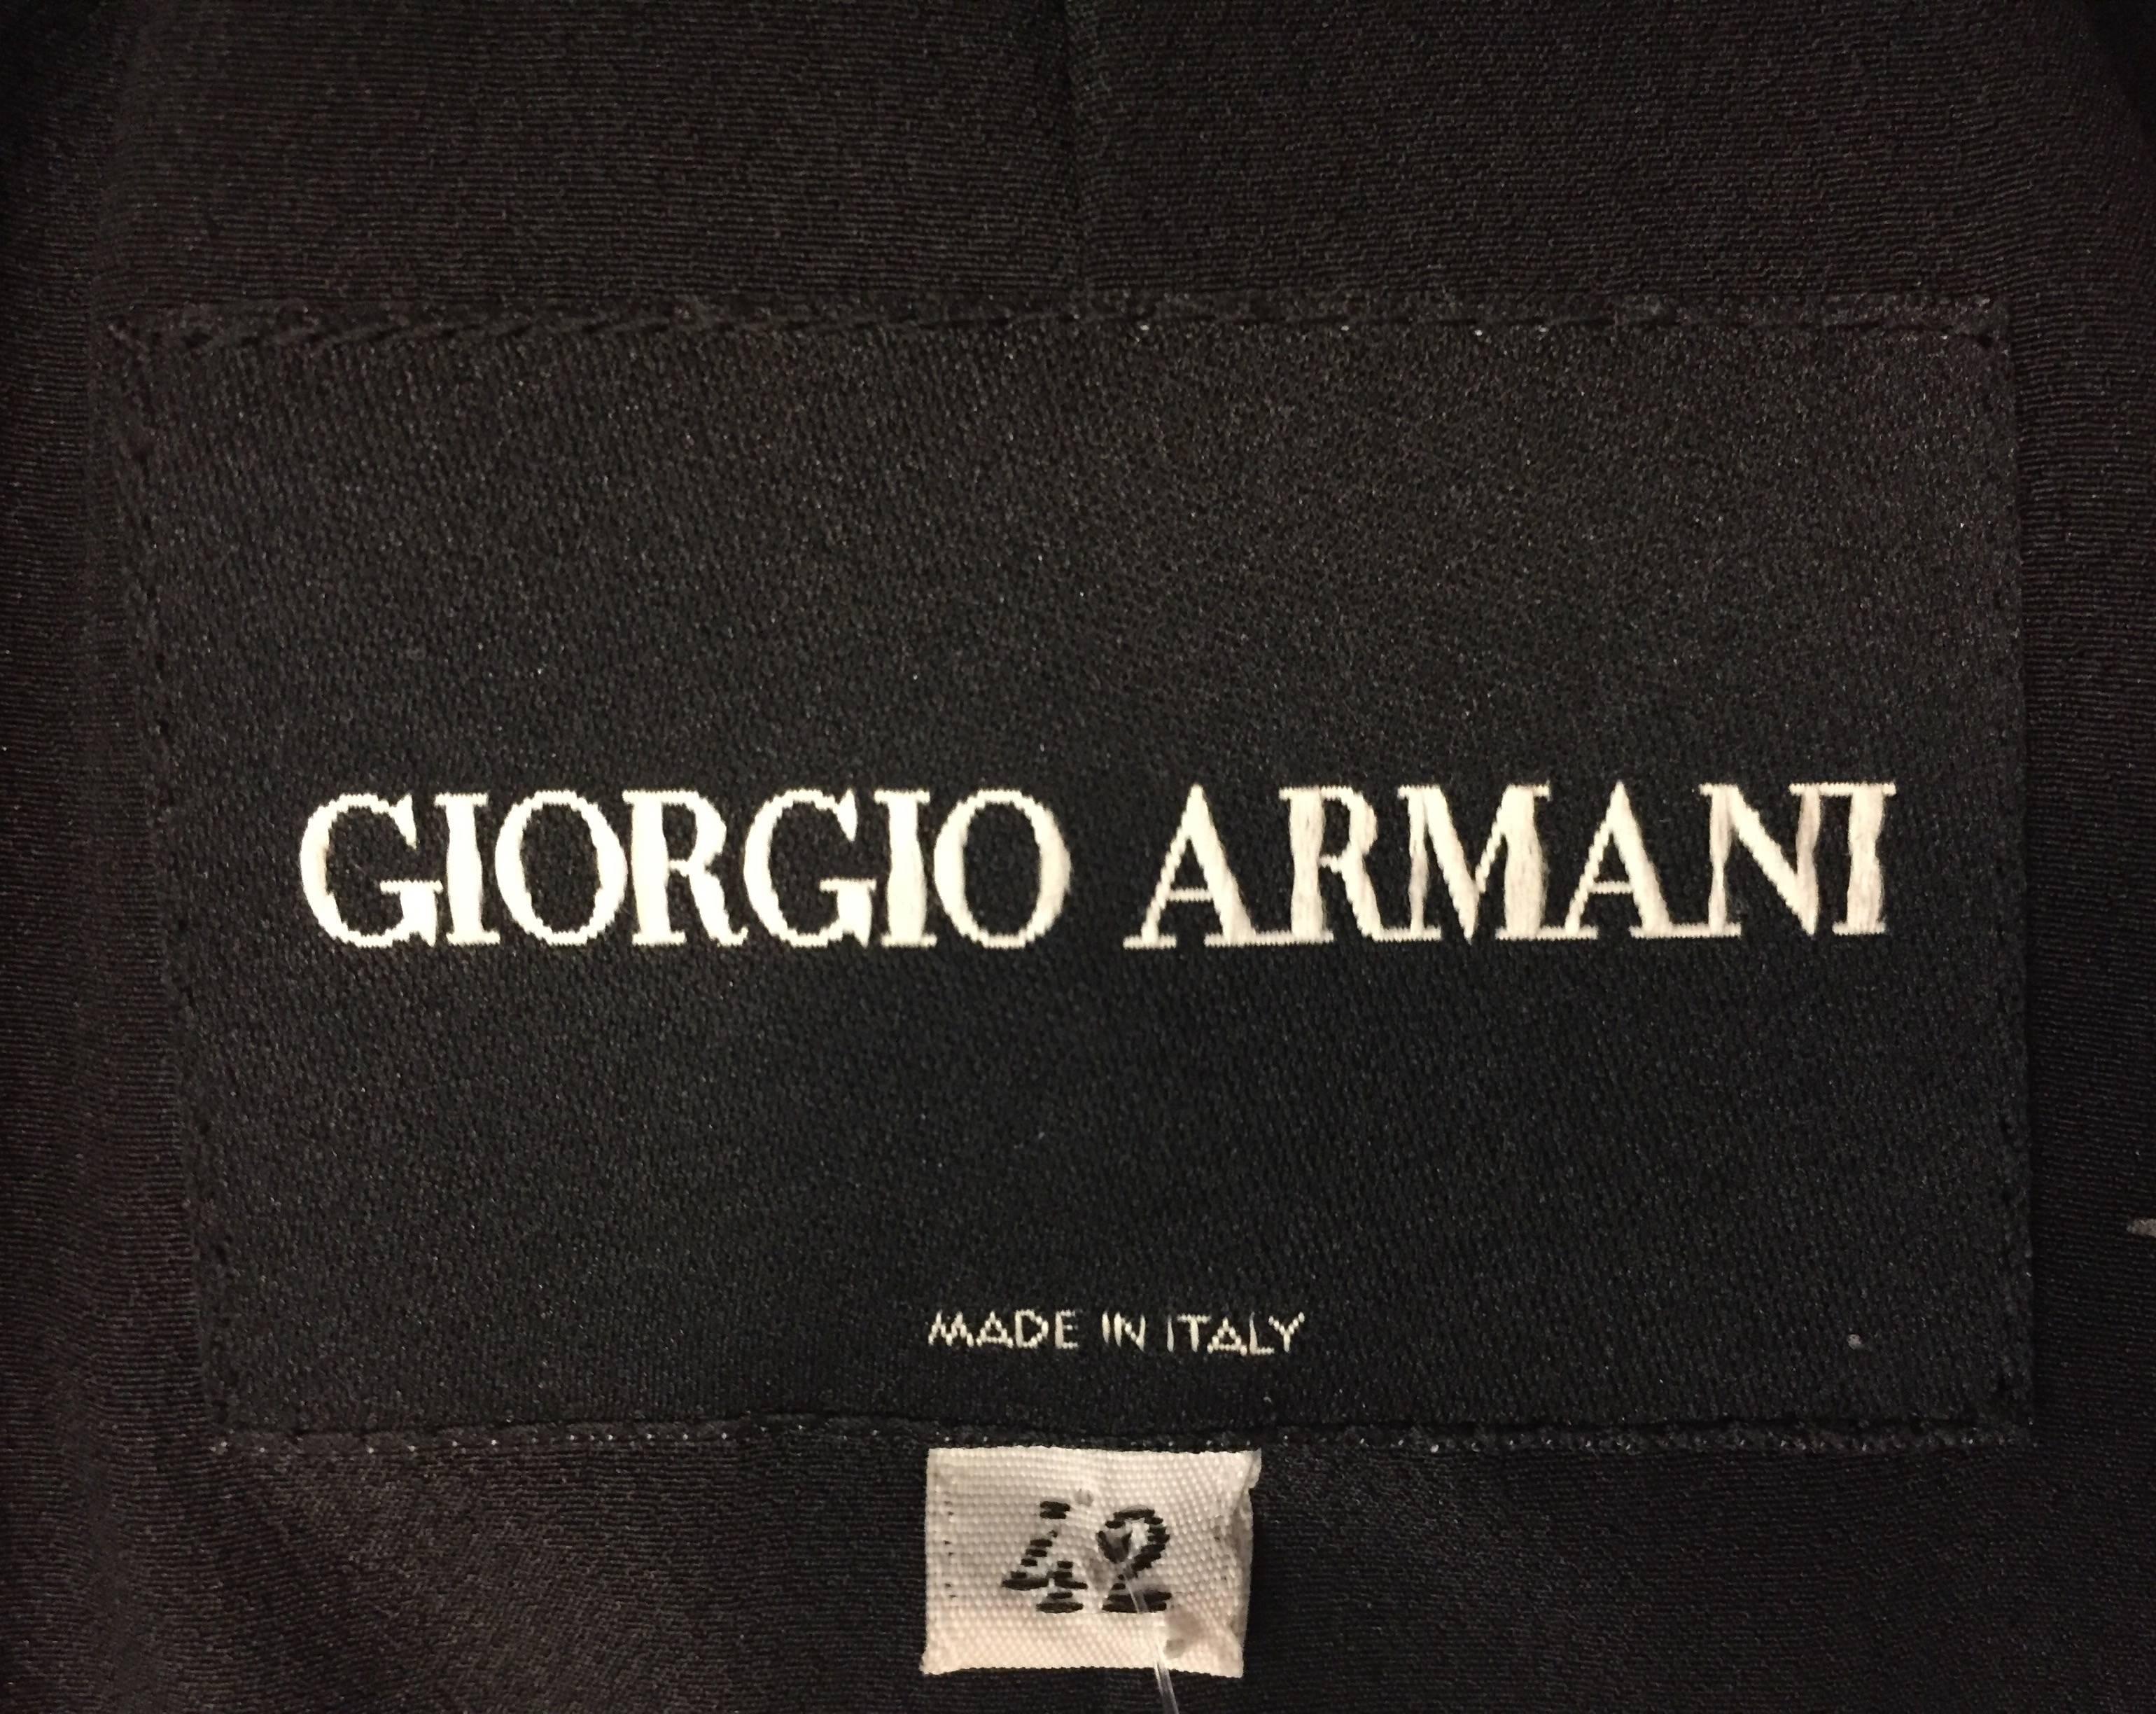 Glamorous Giorgio Armani Black Pleated Silk Pantsuit with Side Pleats on Pants 1